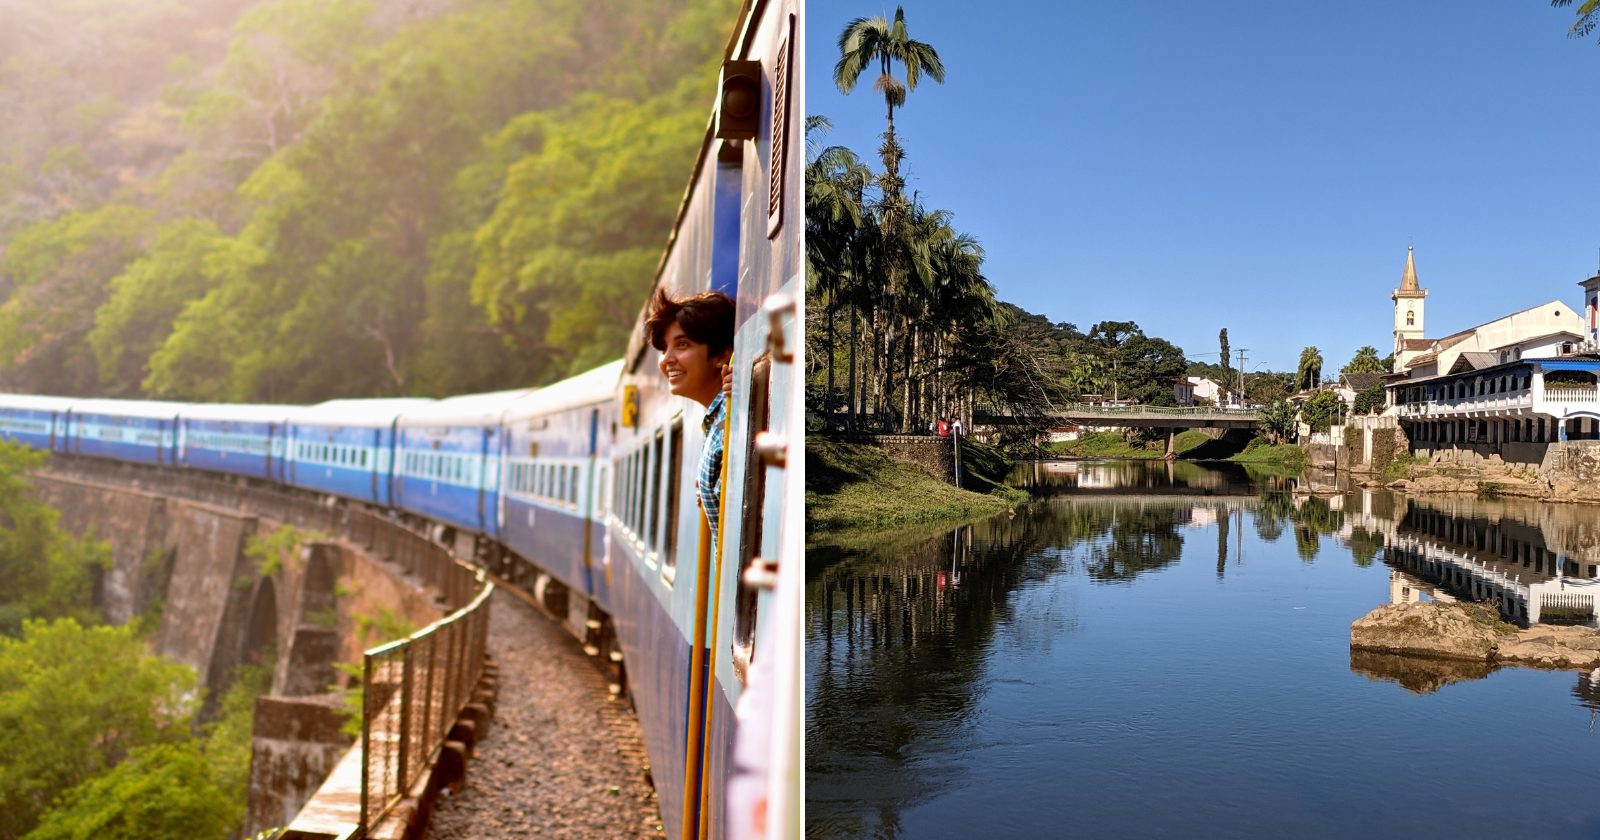 Quanto custa um passeio de trem de Curitiba a Morretes? Planejamento completo para economizar